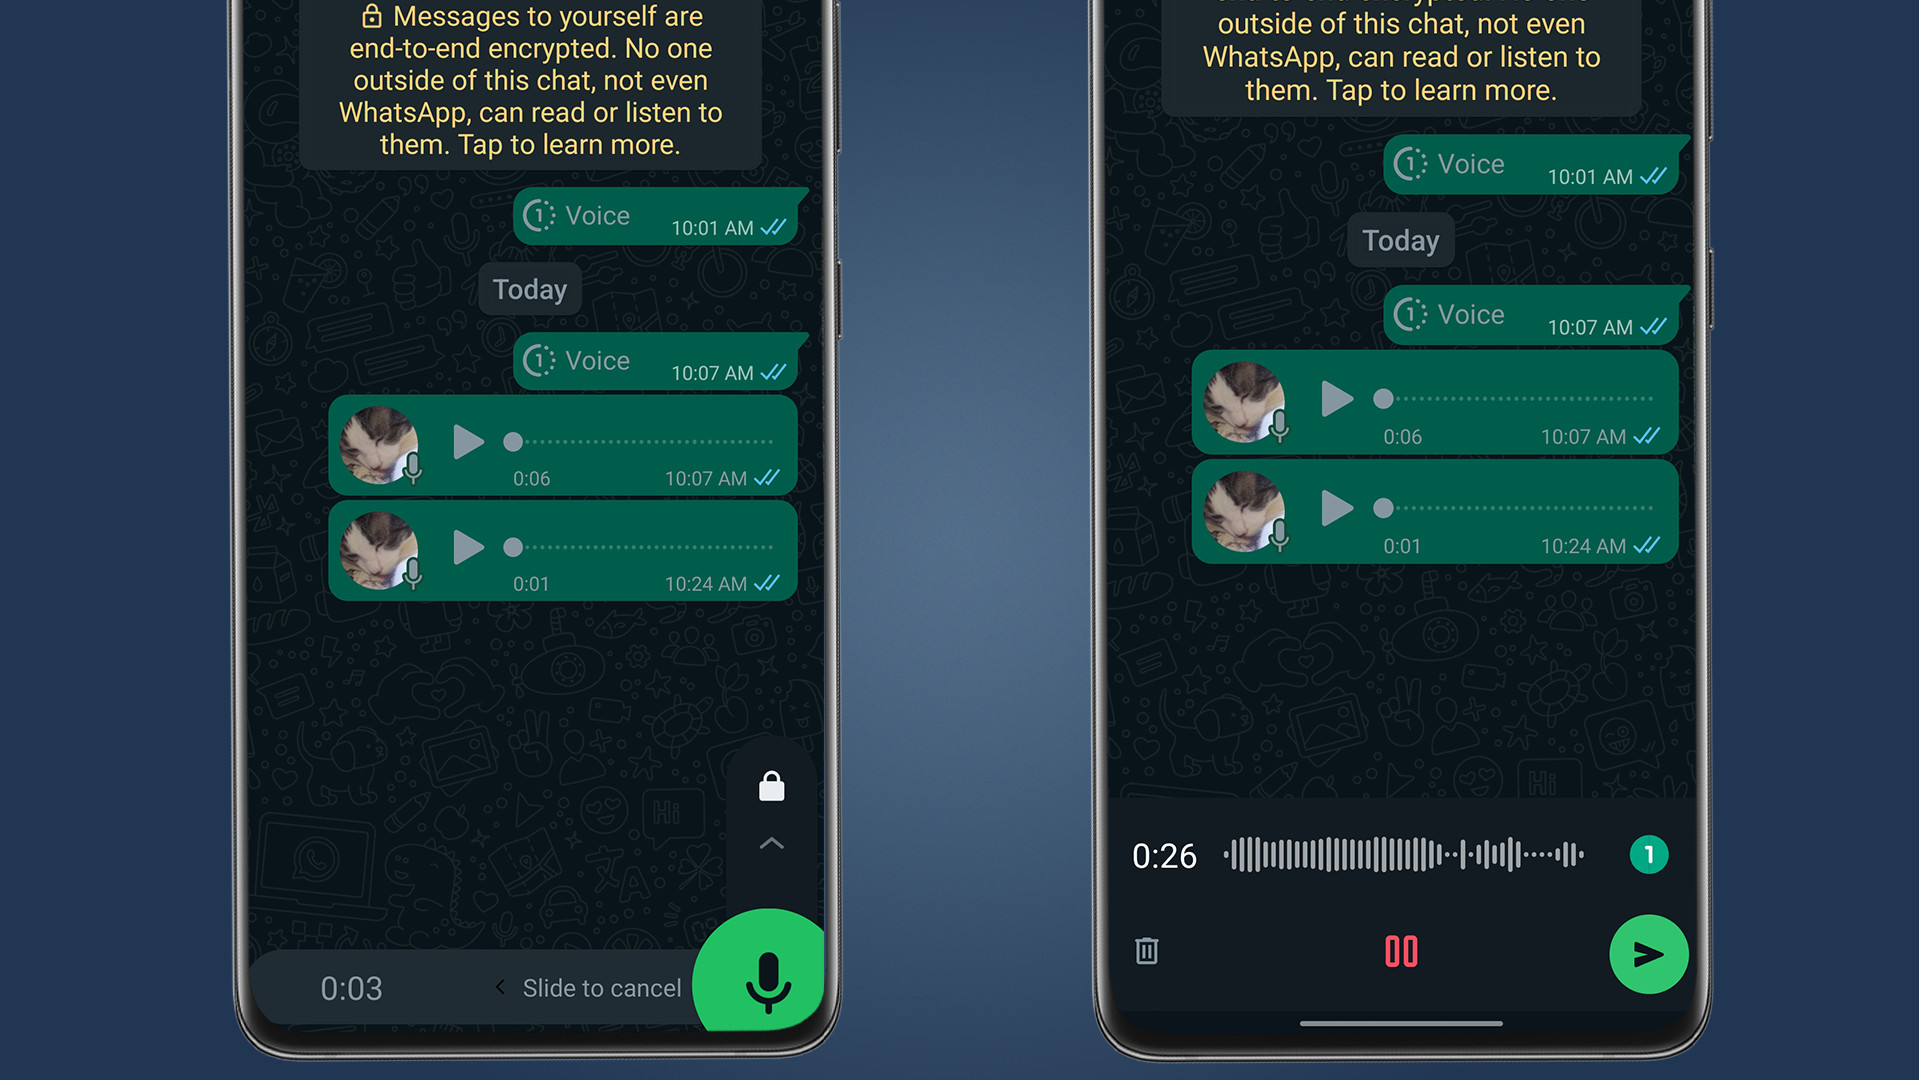 واتس اپ پیام های صوتی خود تخریب شونده را برای اندروید و iOS راه اندازی کرد